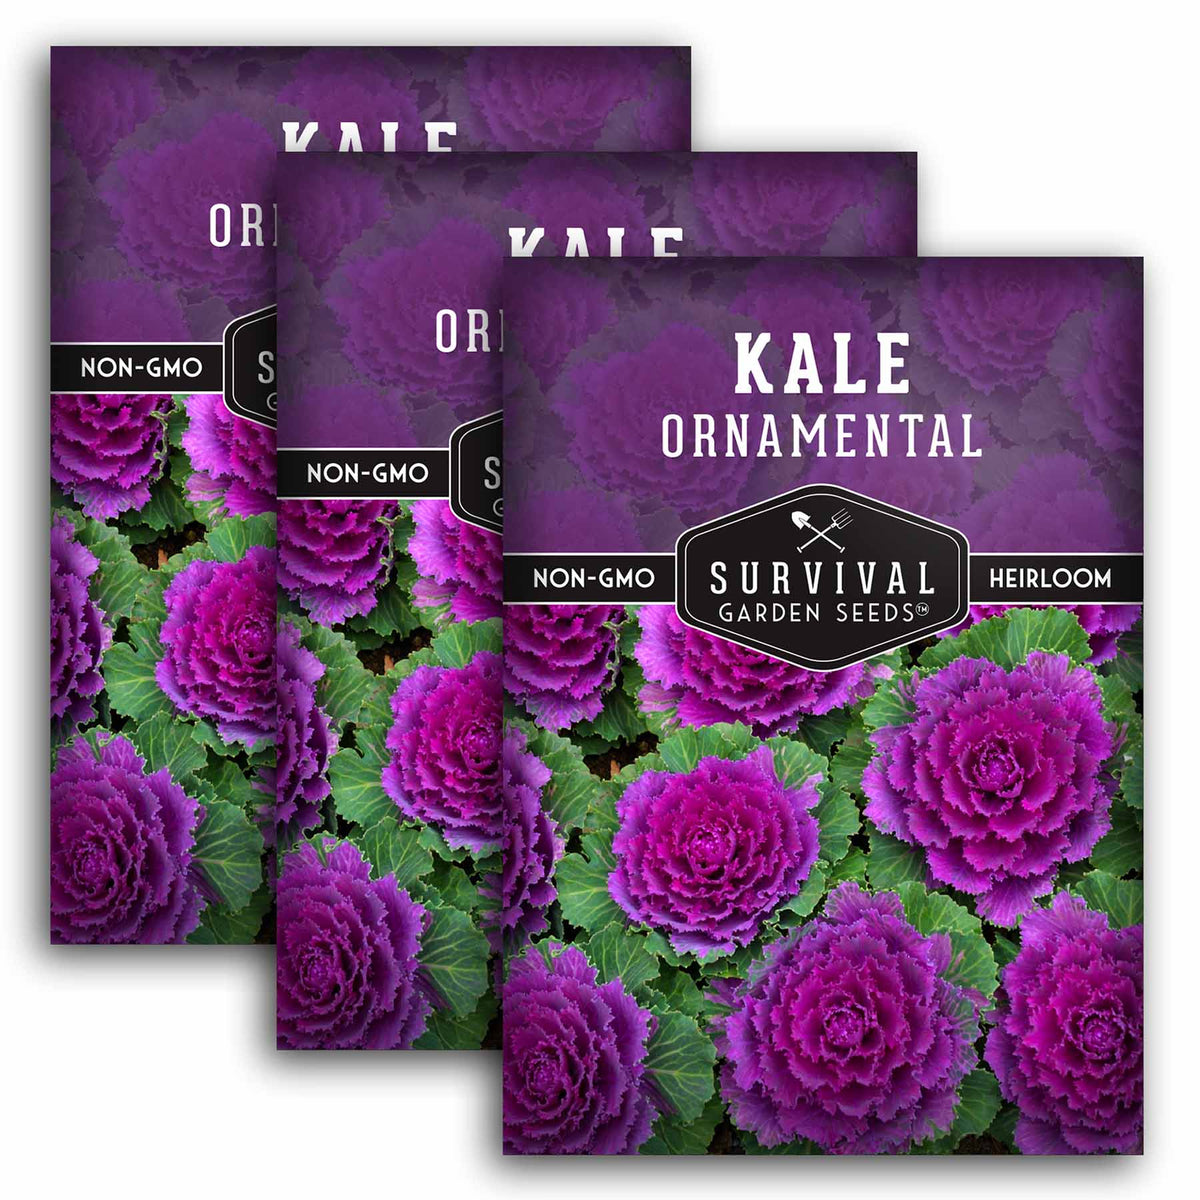 3 packet of Ornamental Kale seeds